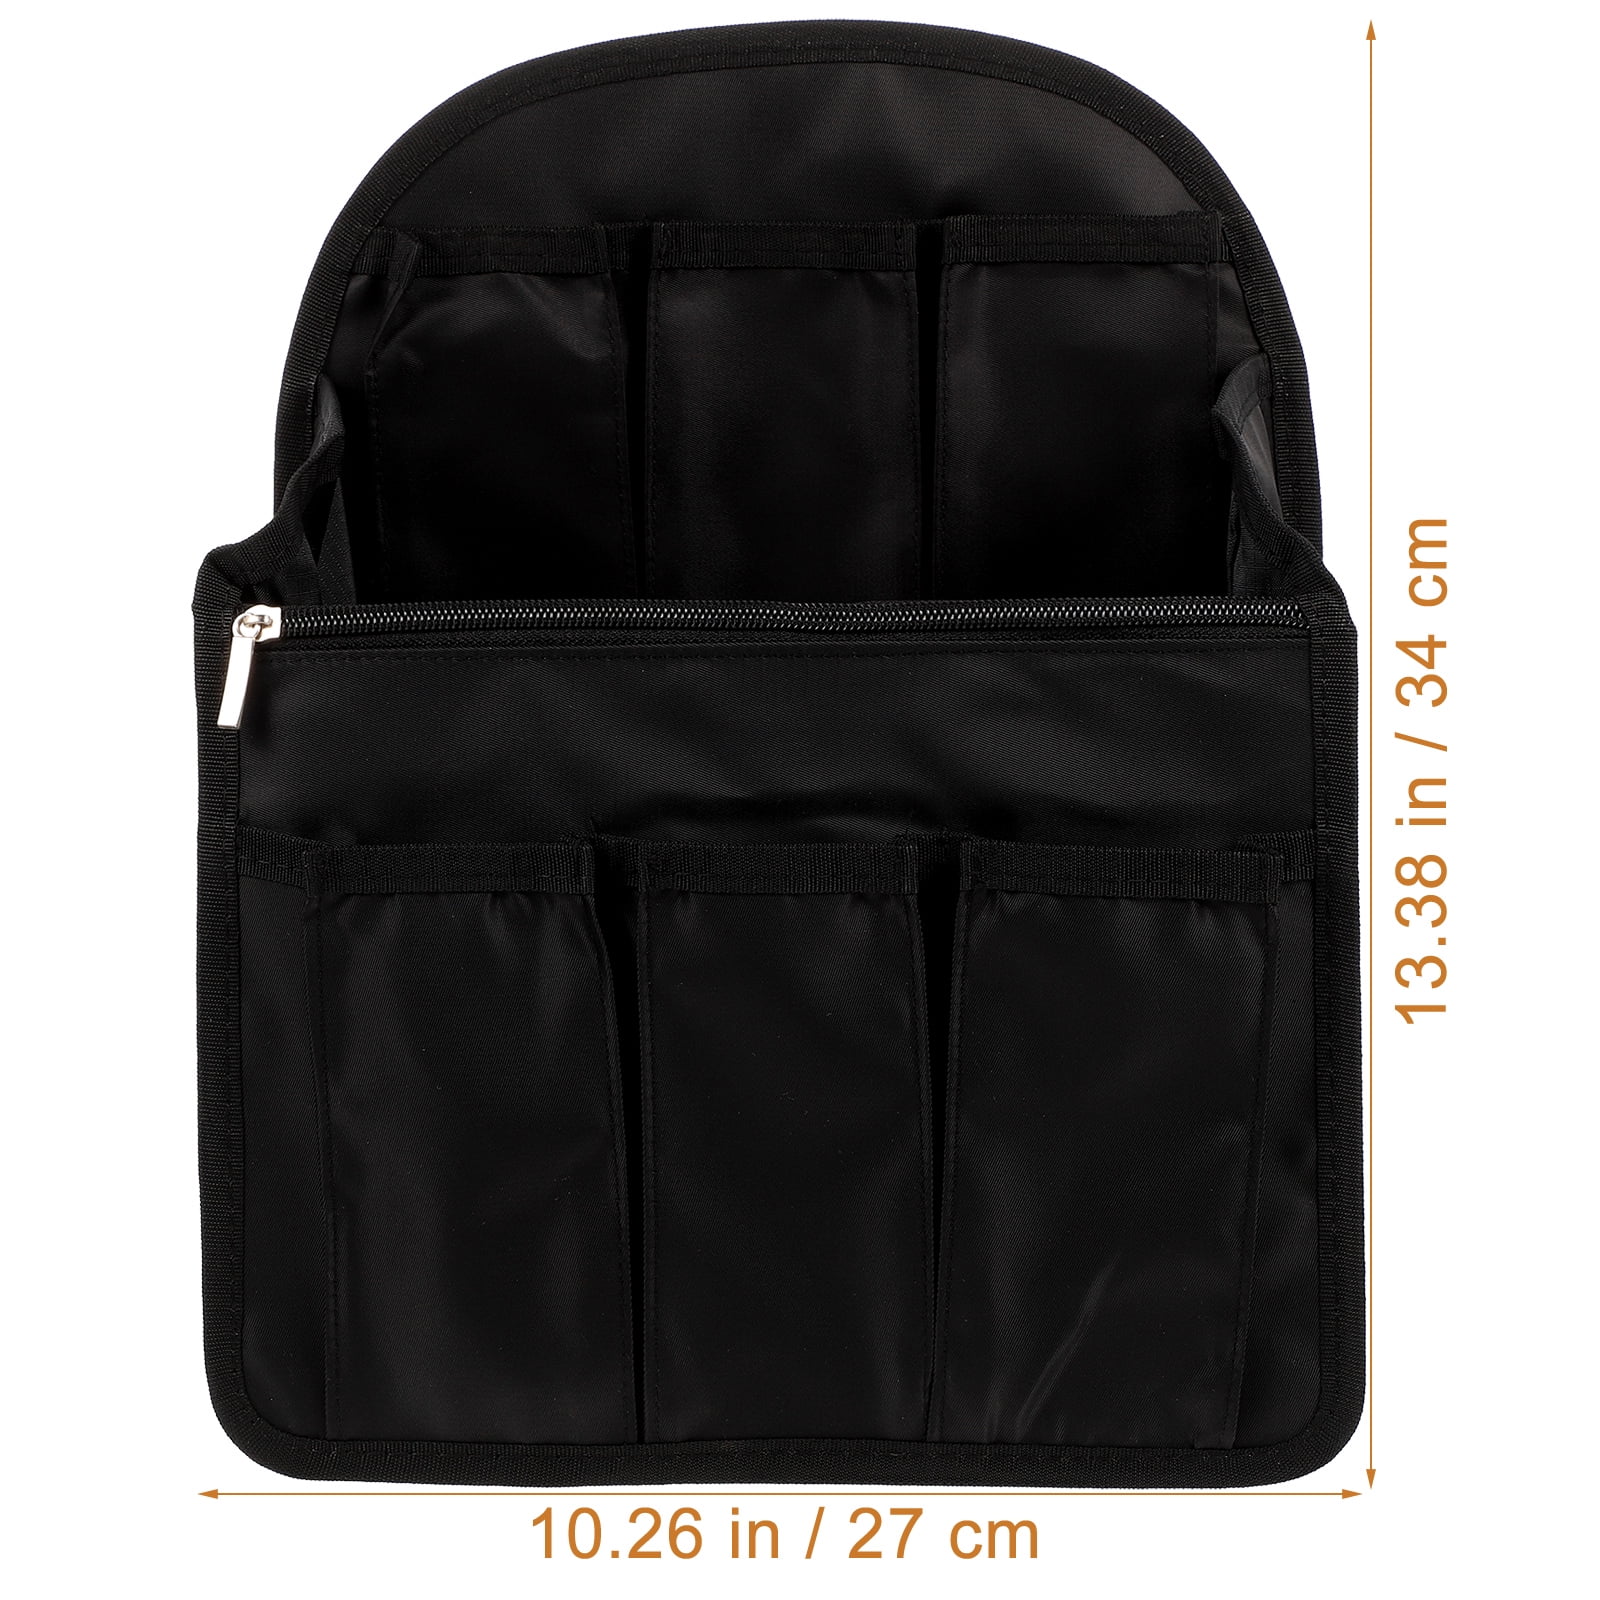 Backpack Organizer Insert for Rucksack Handbag Shoulder Bag